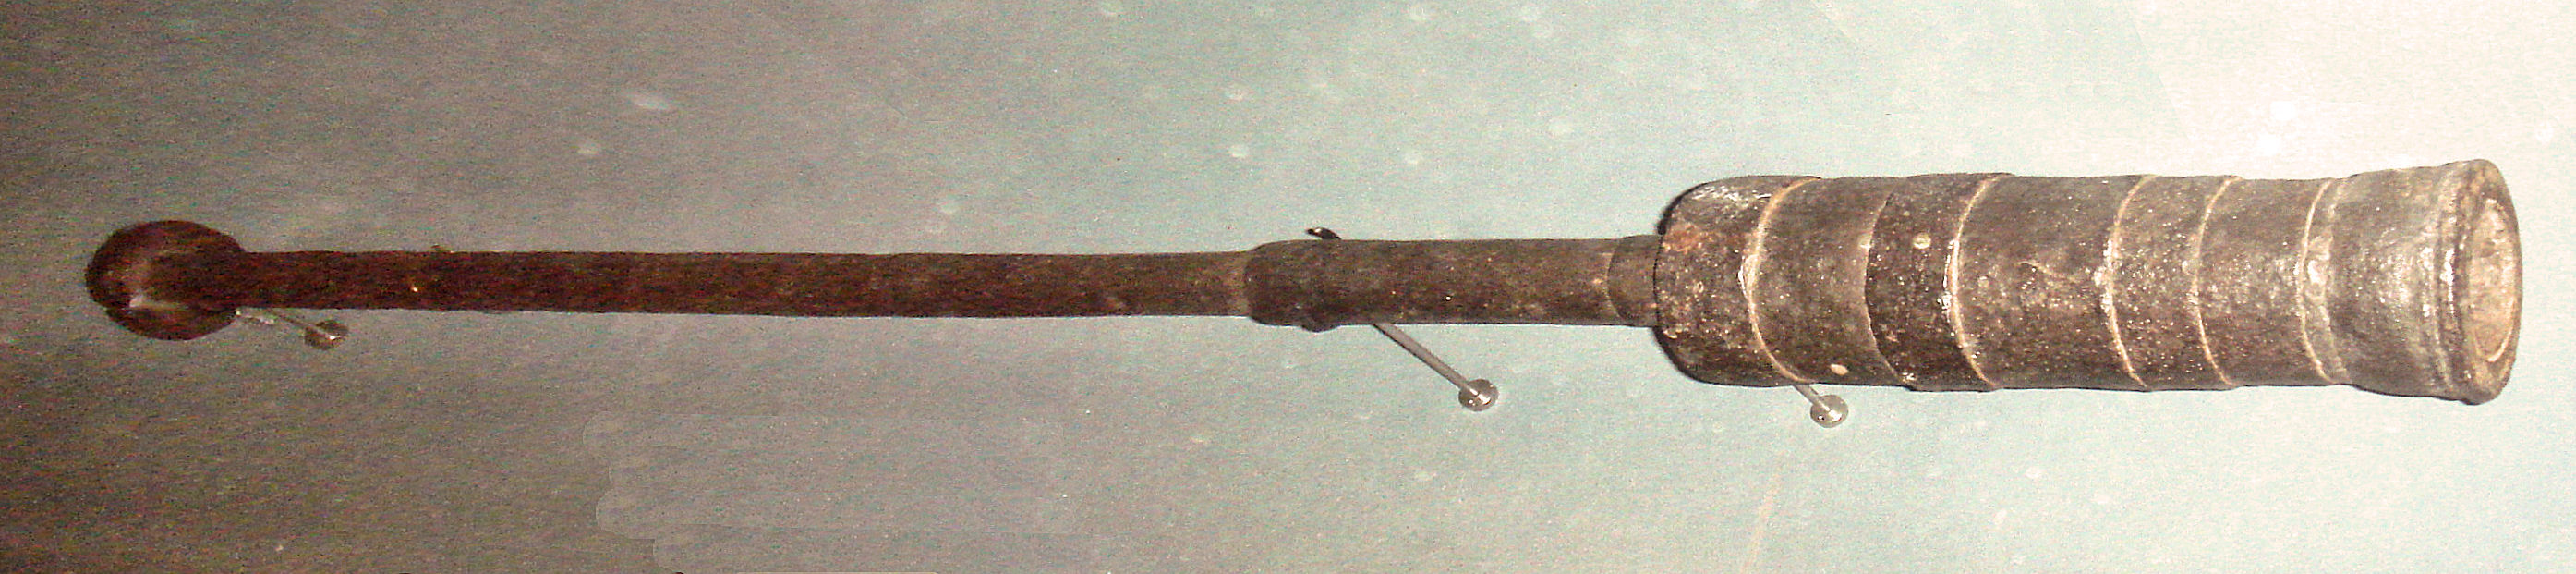 Ручная бомбарда (1390-1400), «Музей Армии», Париж.jpg